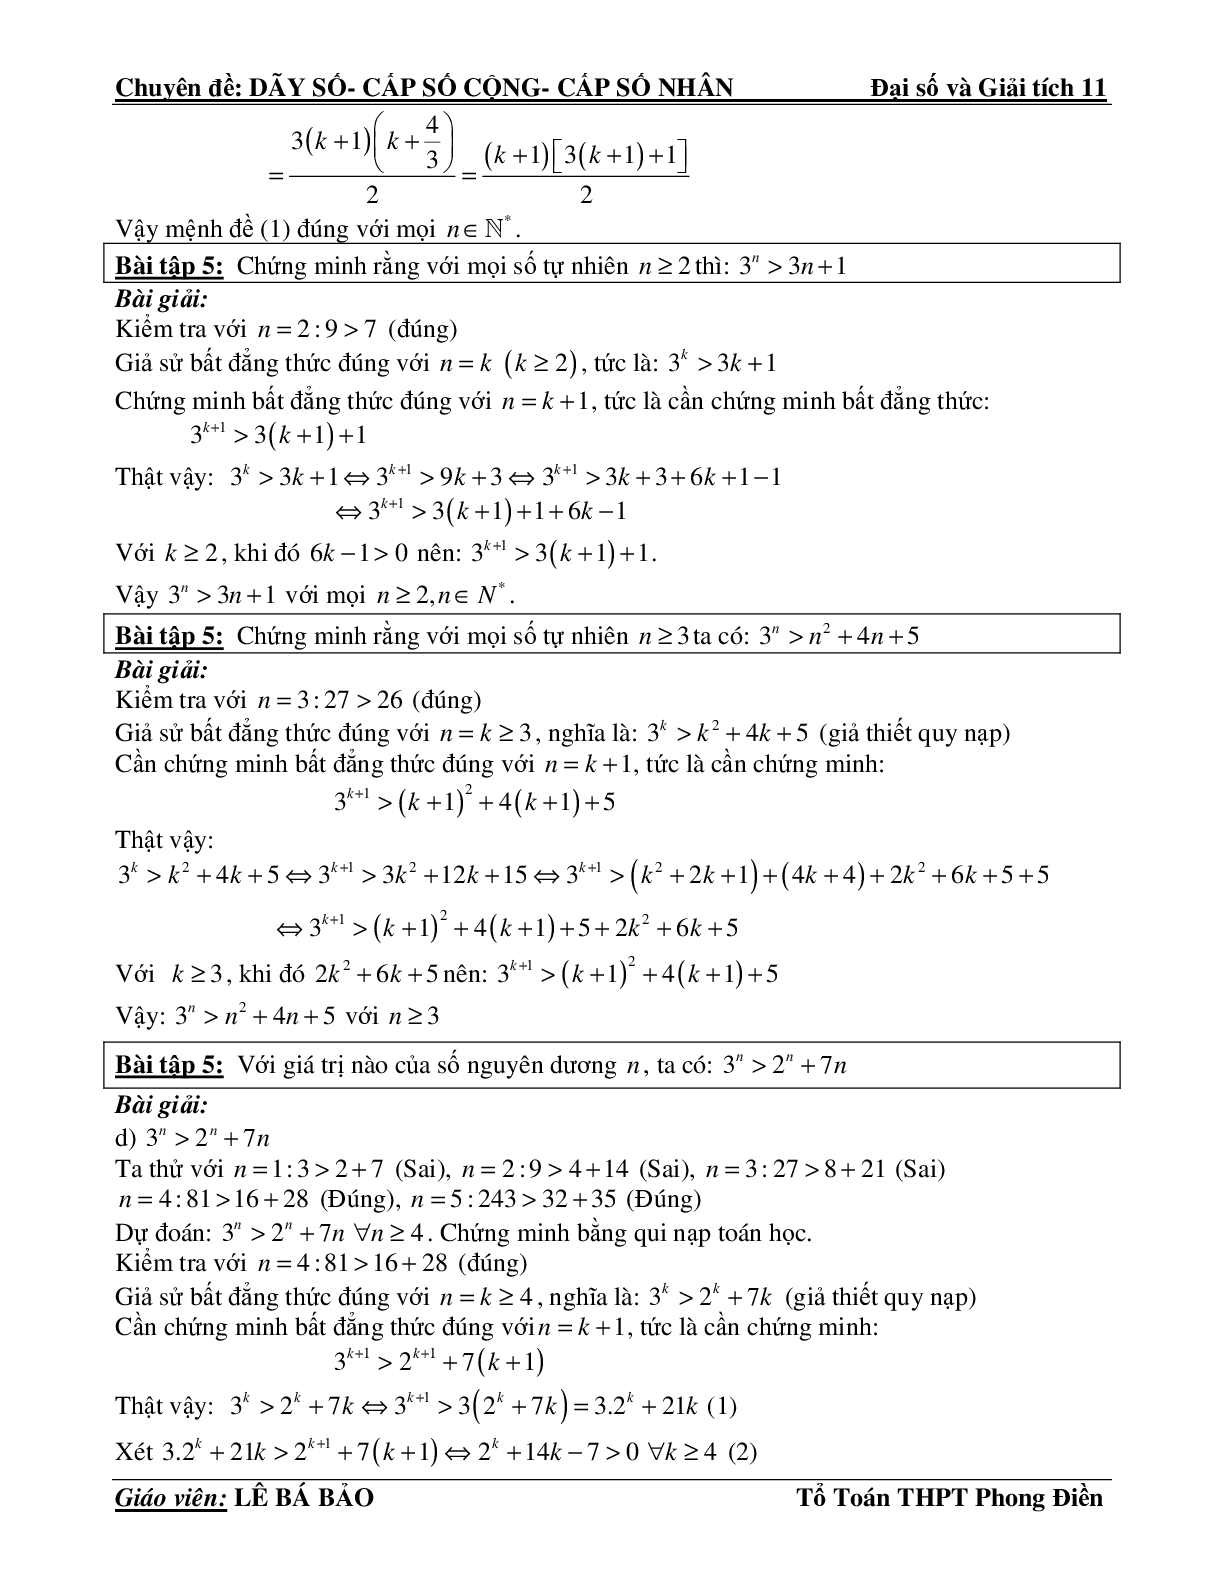 Bài tập phương pháp quy nạp toán học (trang 2)